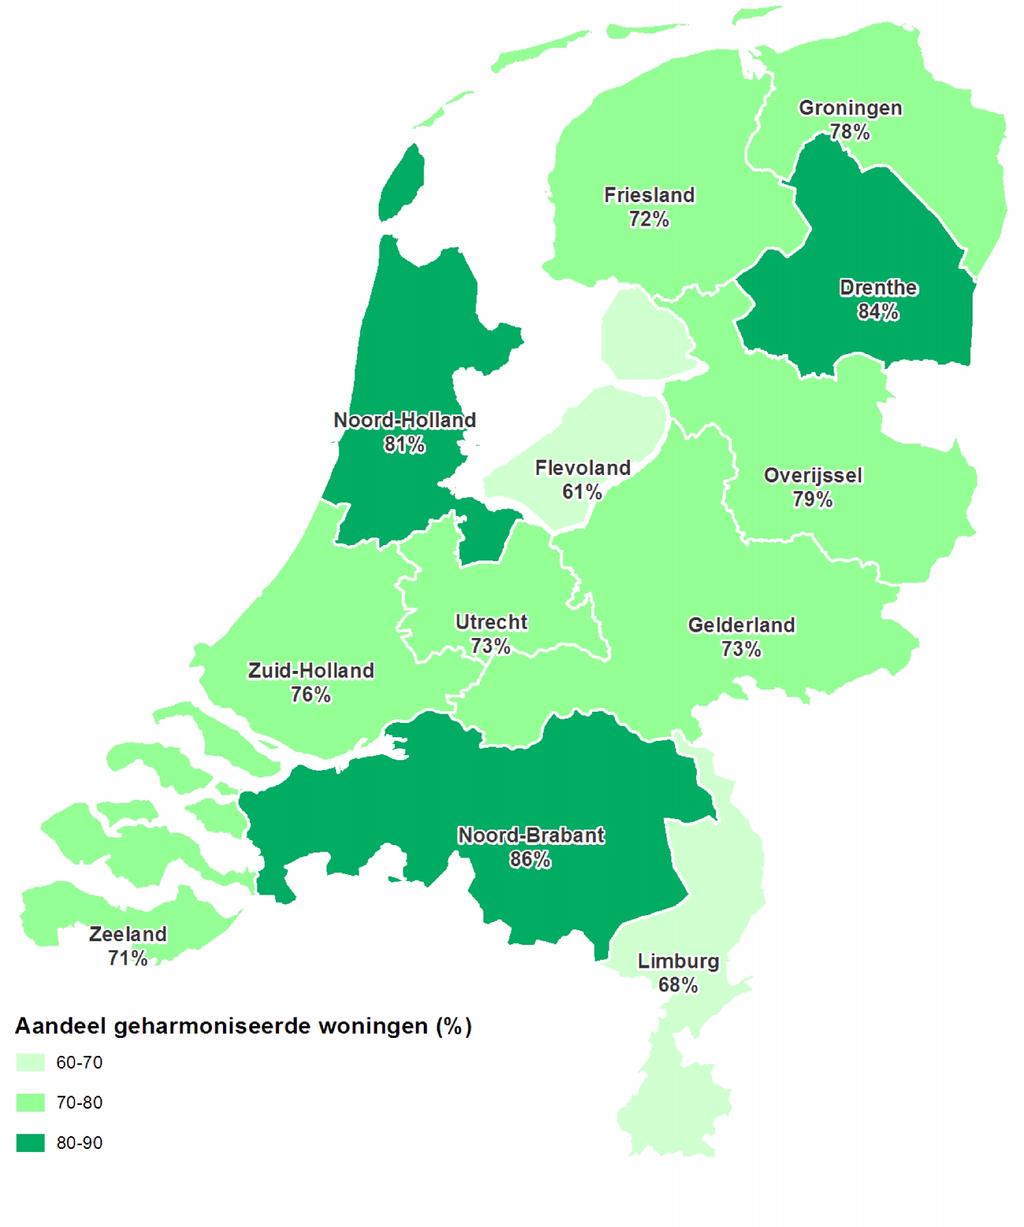 Meeste huurharmonisatie in Noord-Brabant, Drenthe en NoordHolland Figuur 25: Woningen waarvan de huur is geharmoniseerd als percentage van het aantal mutaties, per provincie, 2012 Bron: